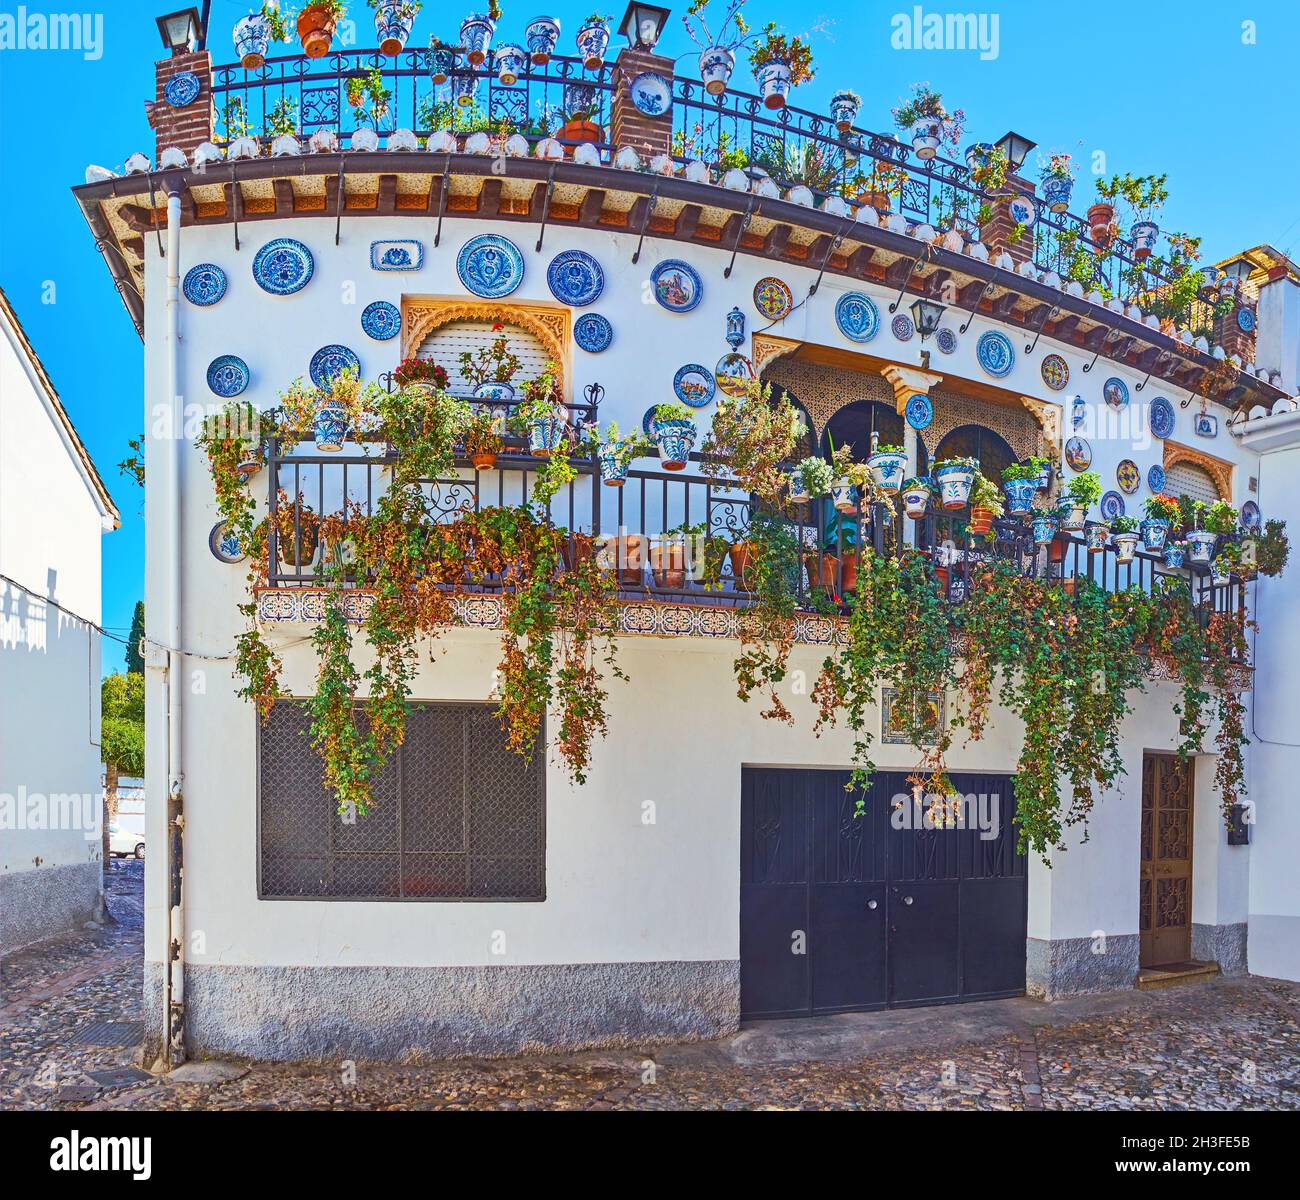 La maison ornée, décorée dans le style andalou traditionnel avec des assiettes en céramique, couverte de motifs bleus fins, plantes vertes et fleurs en pots, Al Banque D'Images